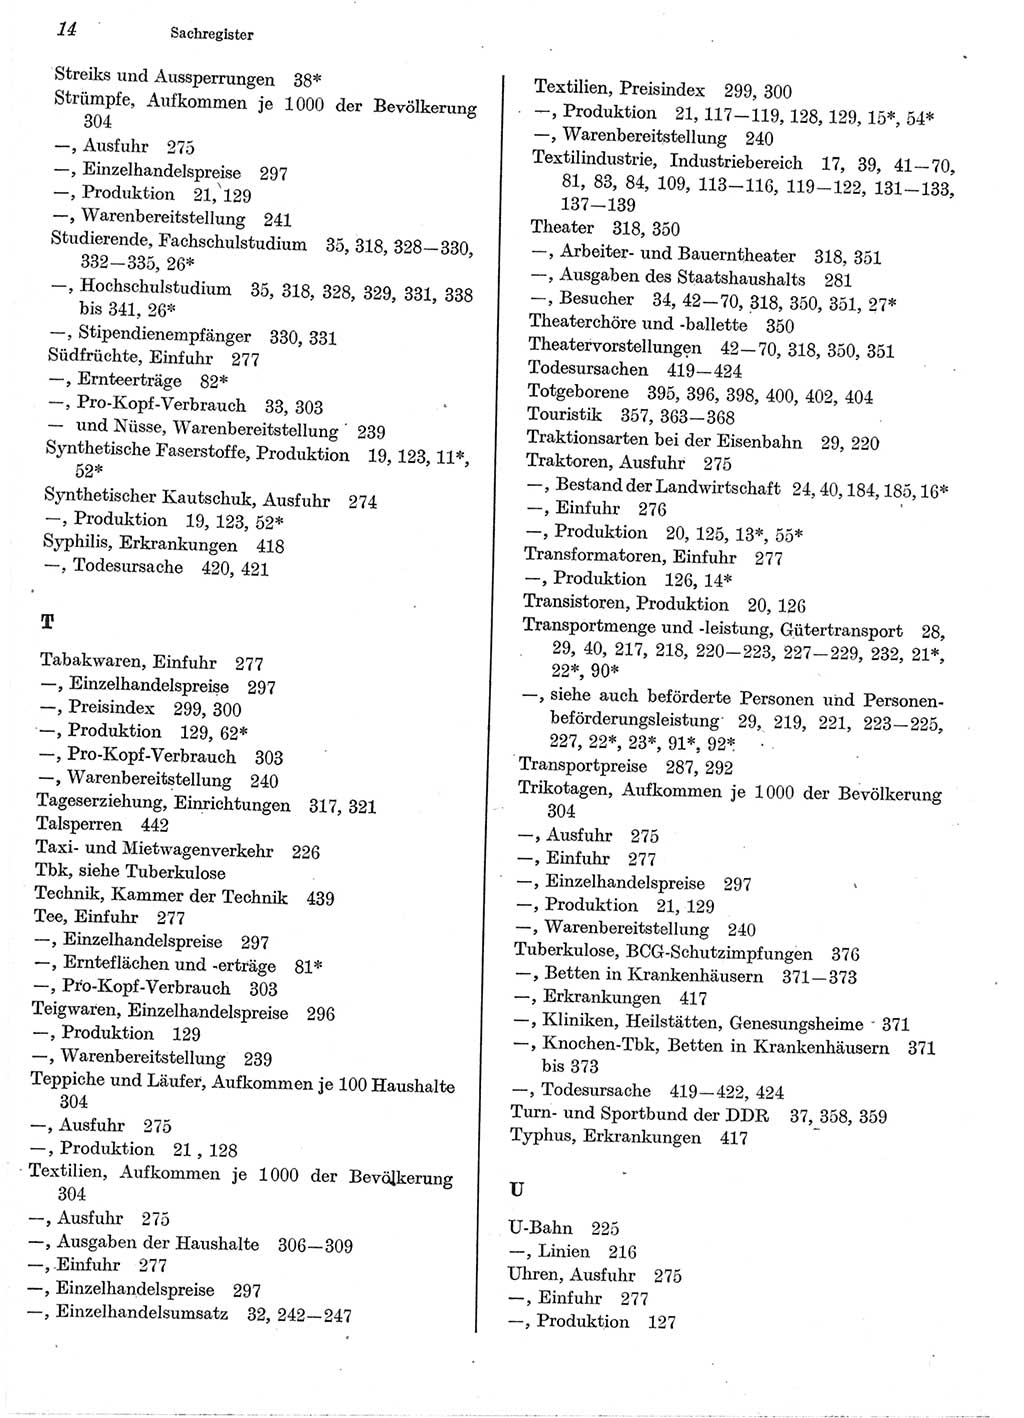 Statistisches Jahrbuch der Deutschen Demokratischen Republik (DDR) 1977, Seite 14 (Stat. Jb. DDR 1977, S. 14)